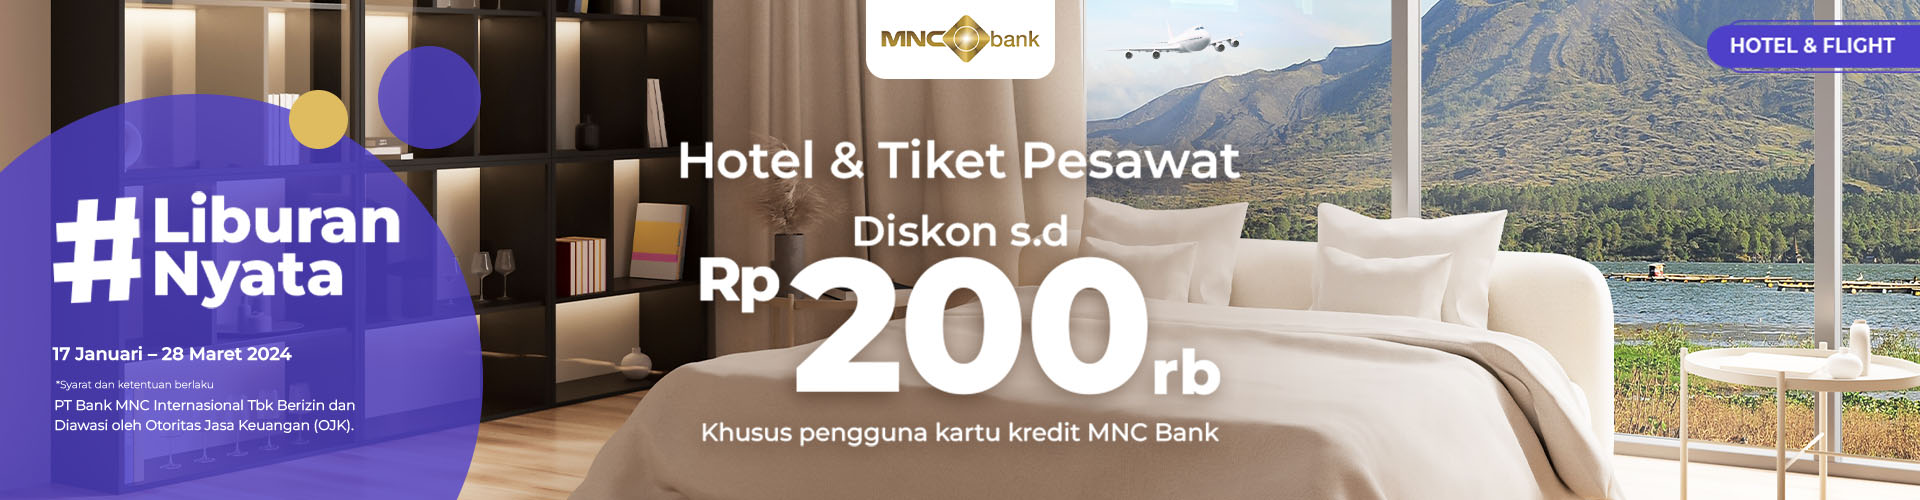 Hotel & Tiket Pesawat MNC